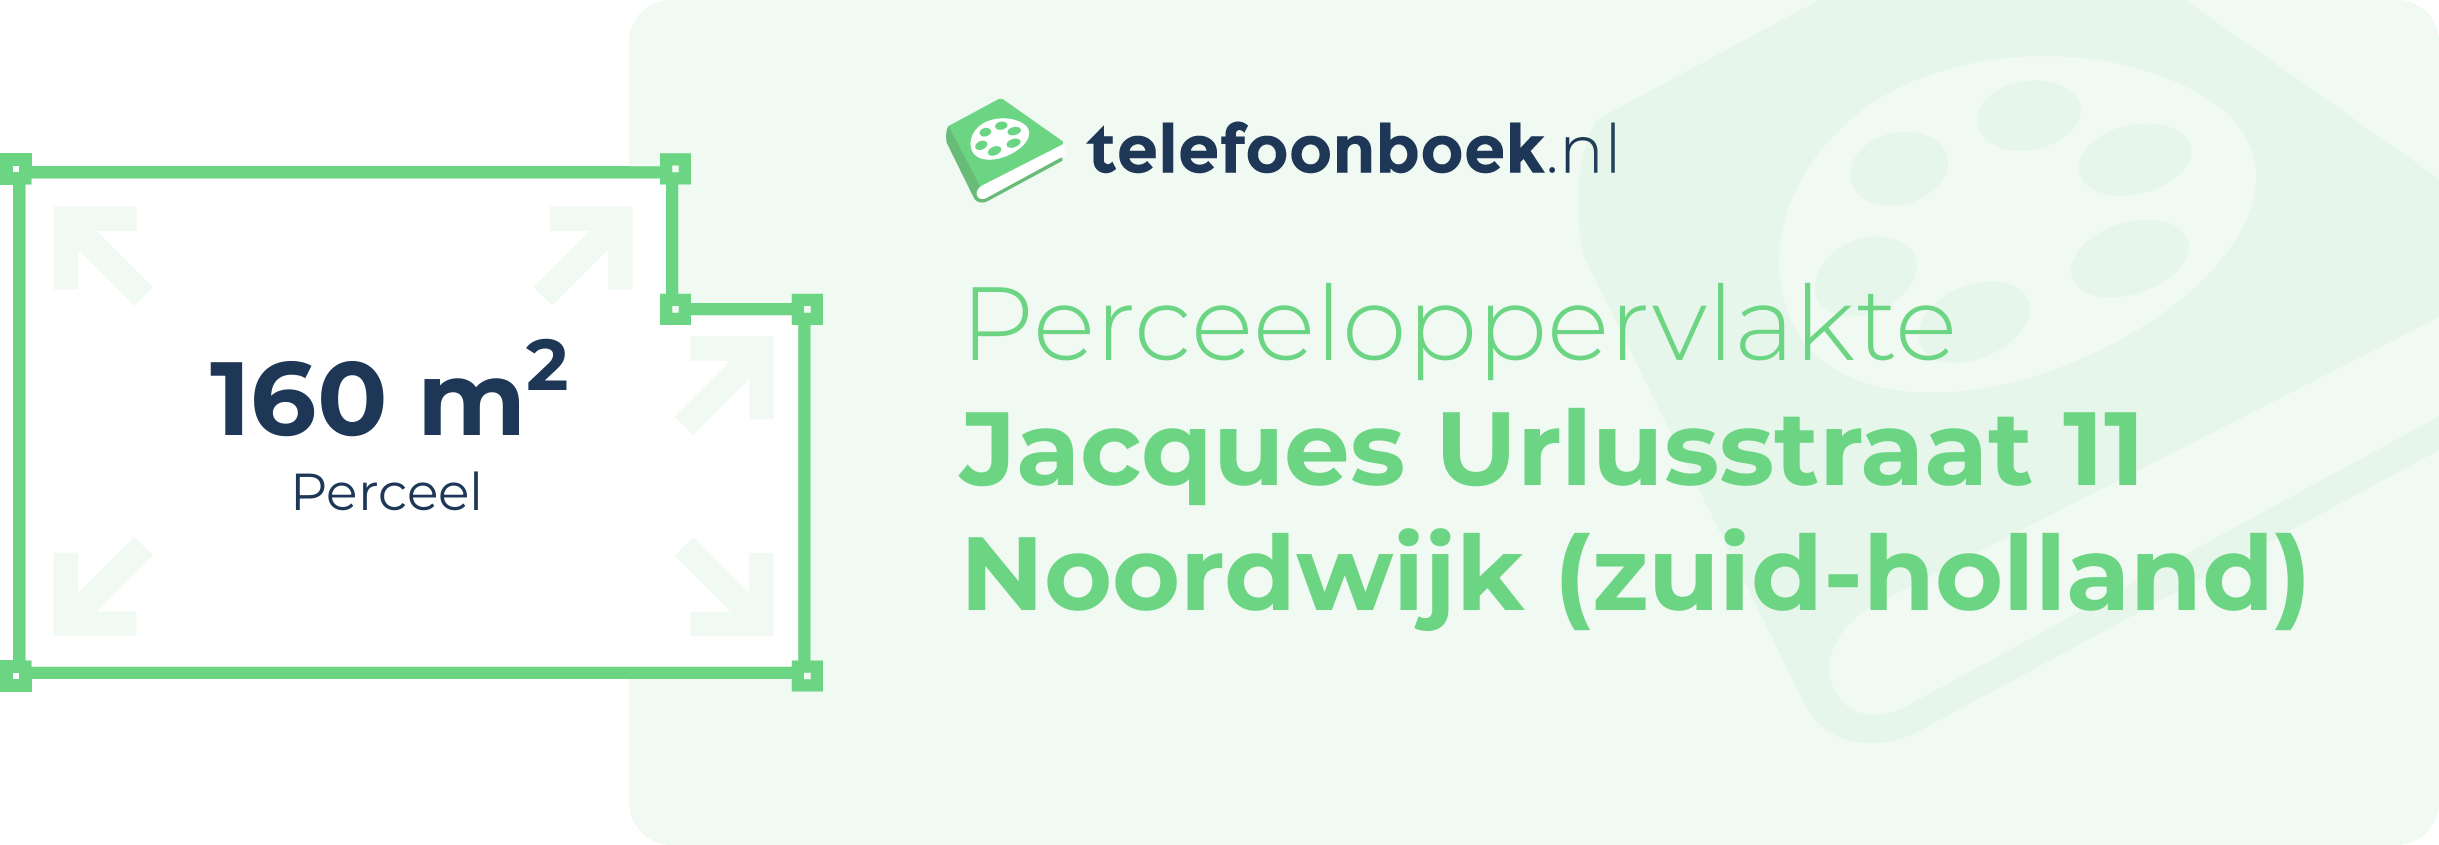 Perceeloppervlakte Jacques Urlusstraat 11 Noordwijk (Zuid-Holland)